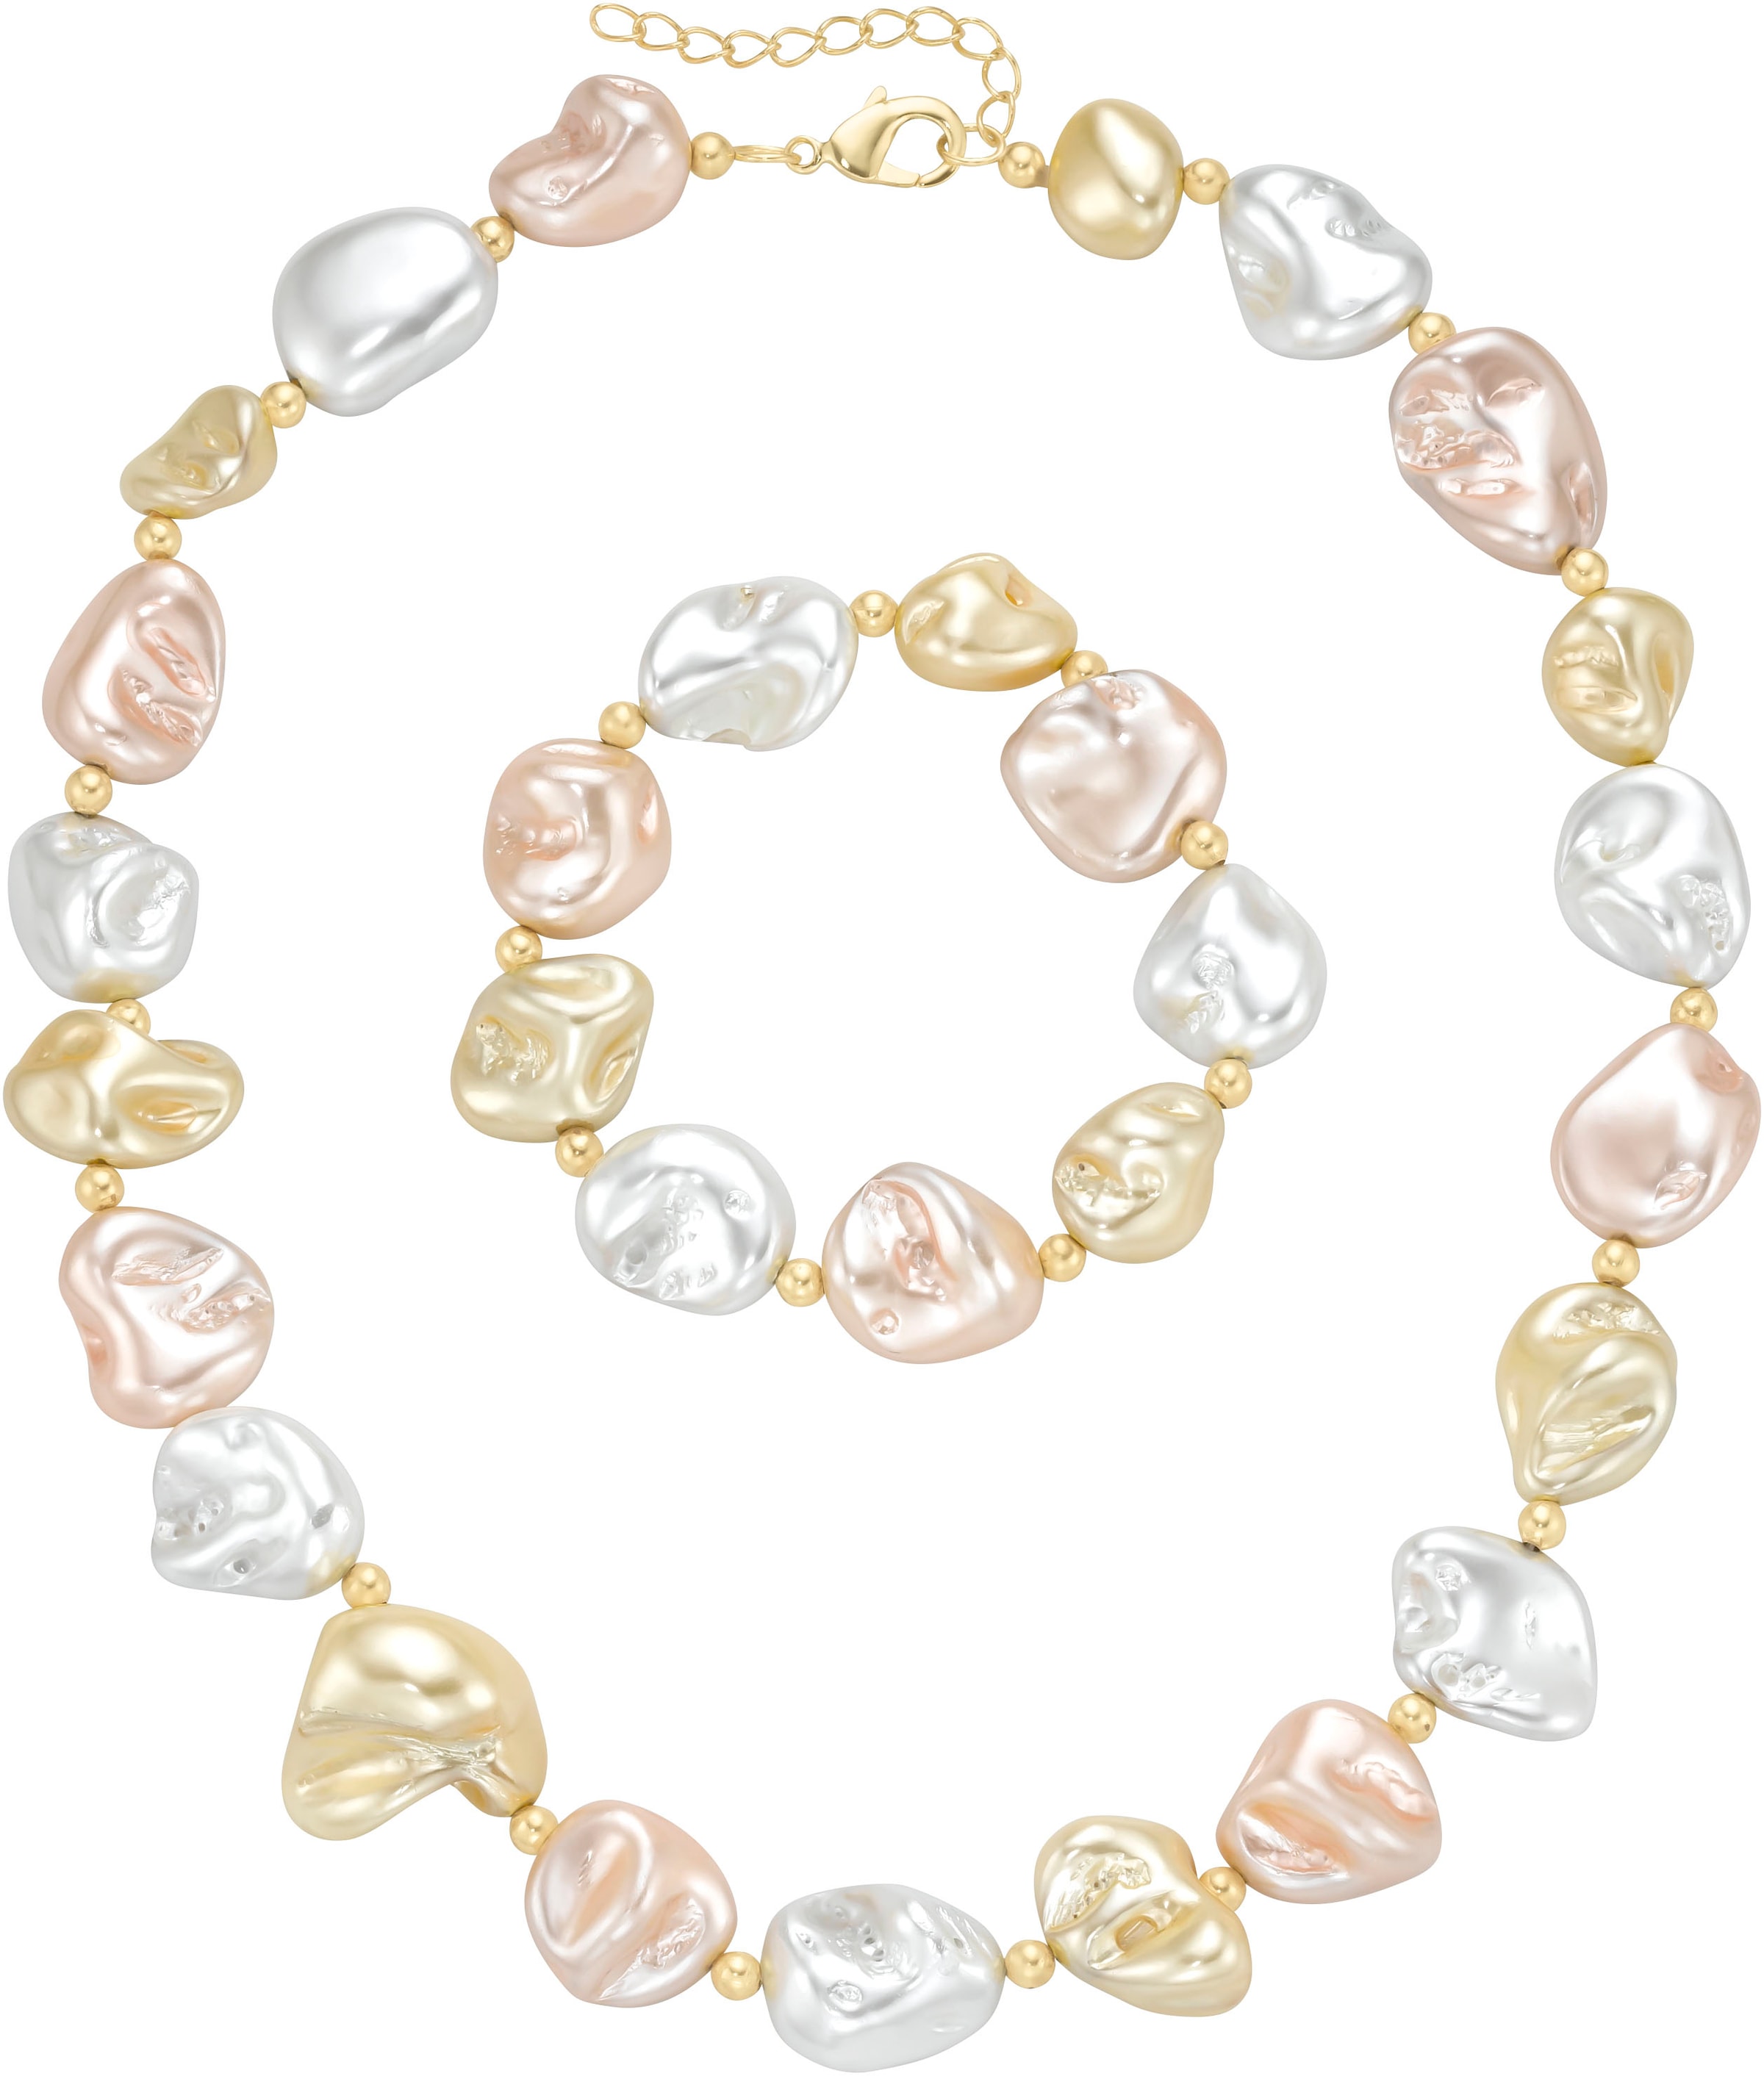 Ketten und Armband Set »Multipack Schmuck Geschenk Perlenarmband Perlenkette barock...